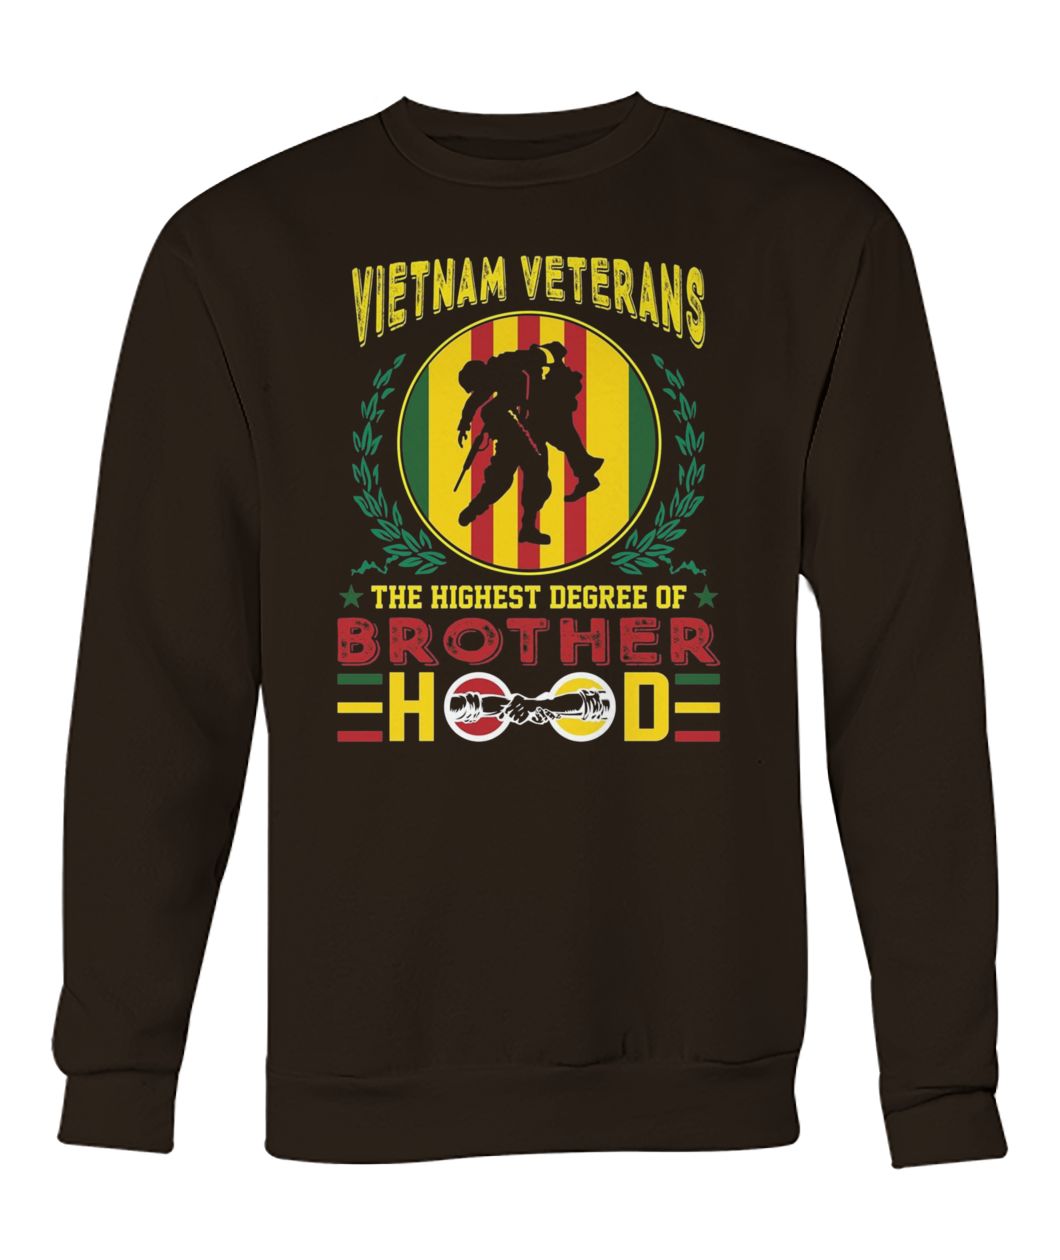 Vietnam veterans the highest degree of brotherhood crew neck sweatshirt